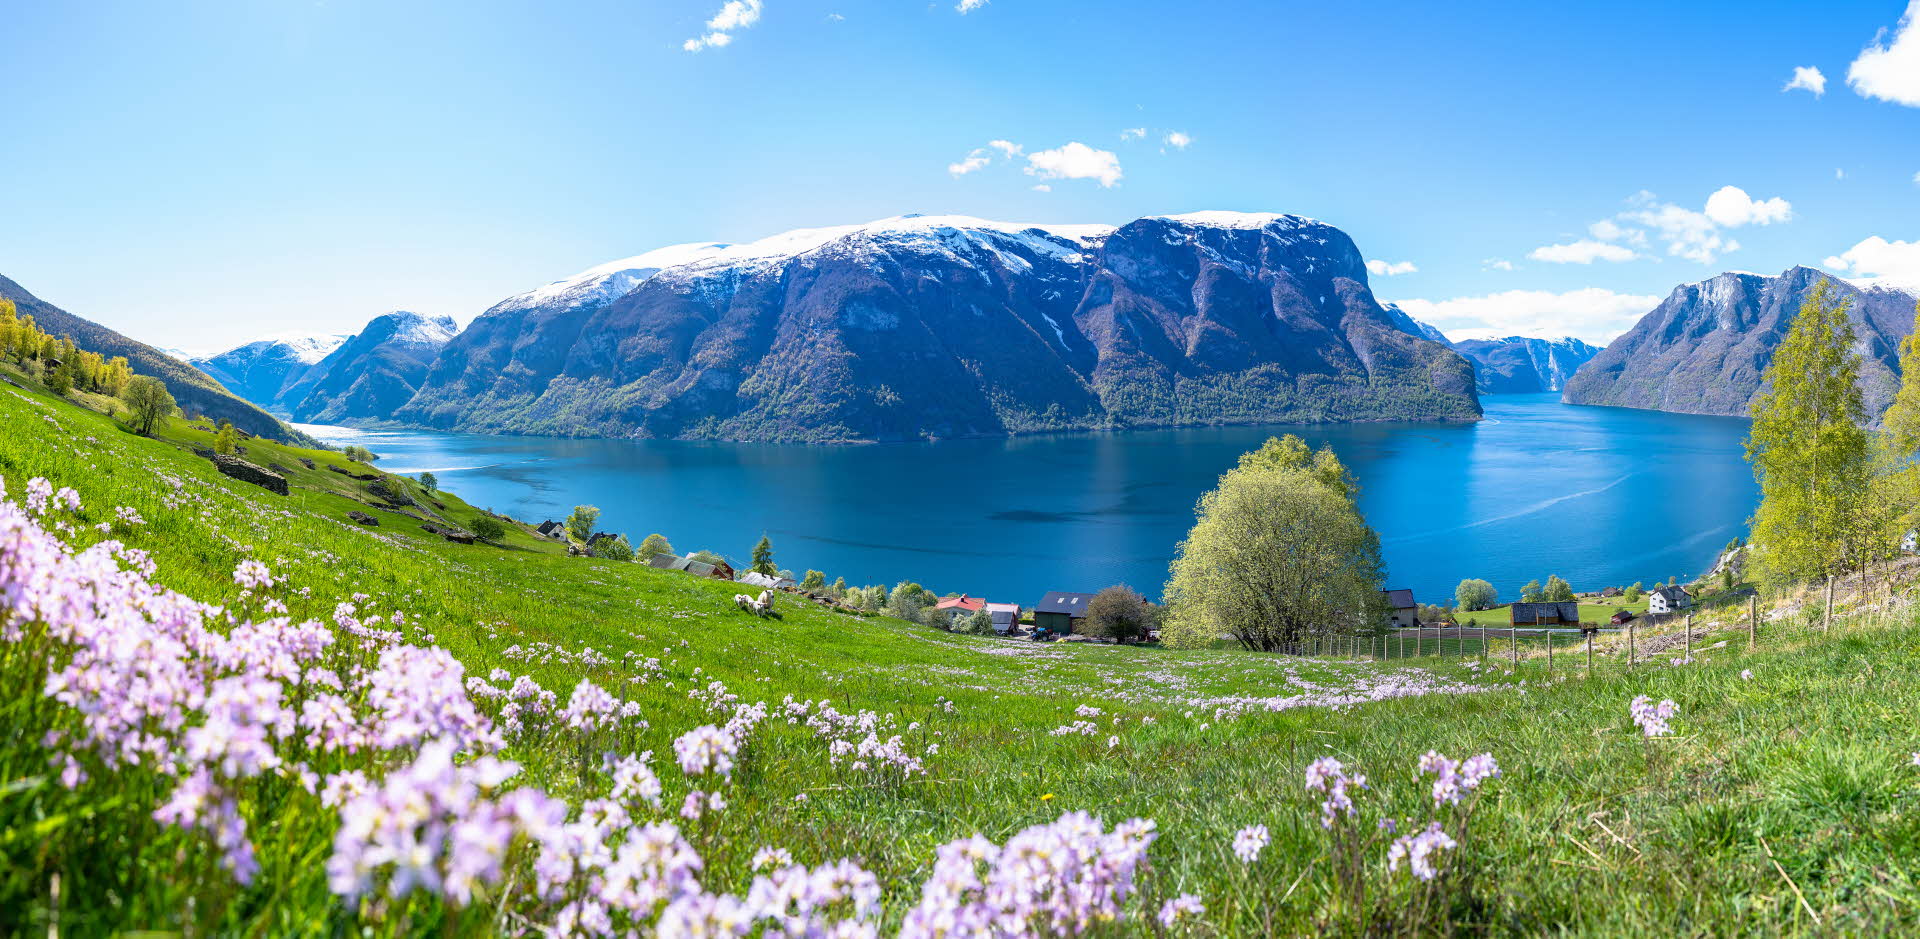 ノルウェーのユネスコに登録されたアウルランフィヨルドにて。羊のいる緑豊かな花の牧草地を見下ろすAurlandのパノラマビュー